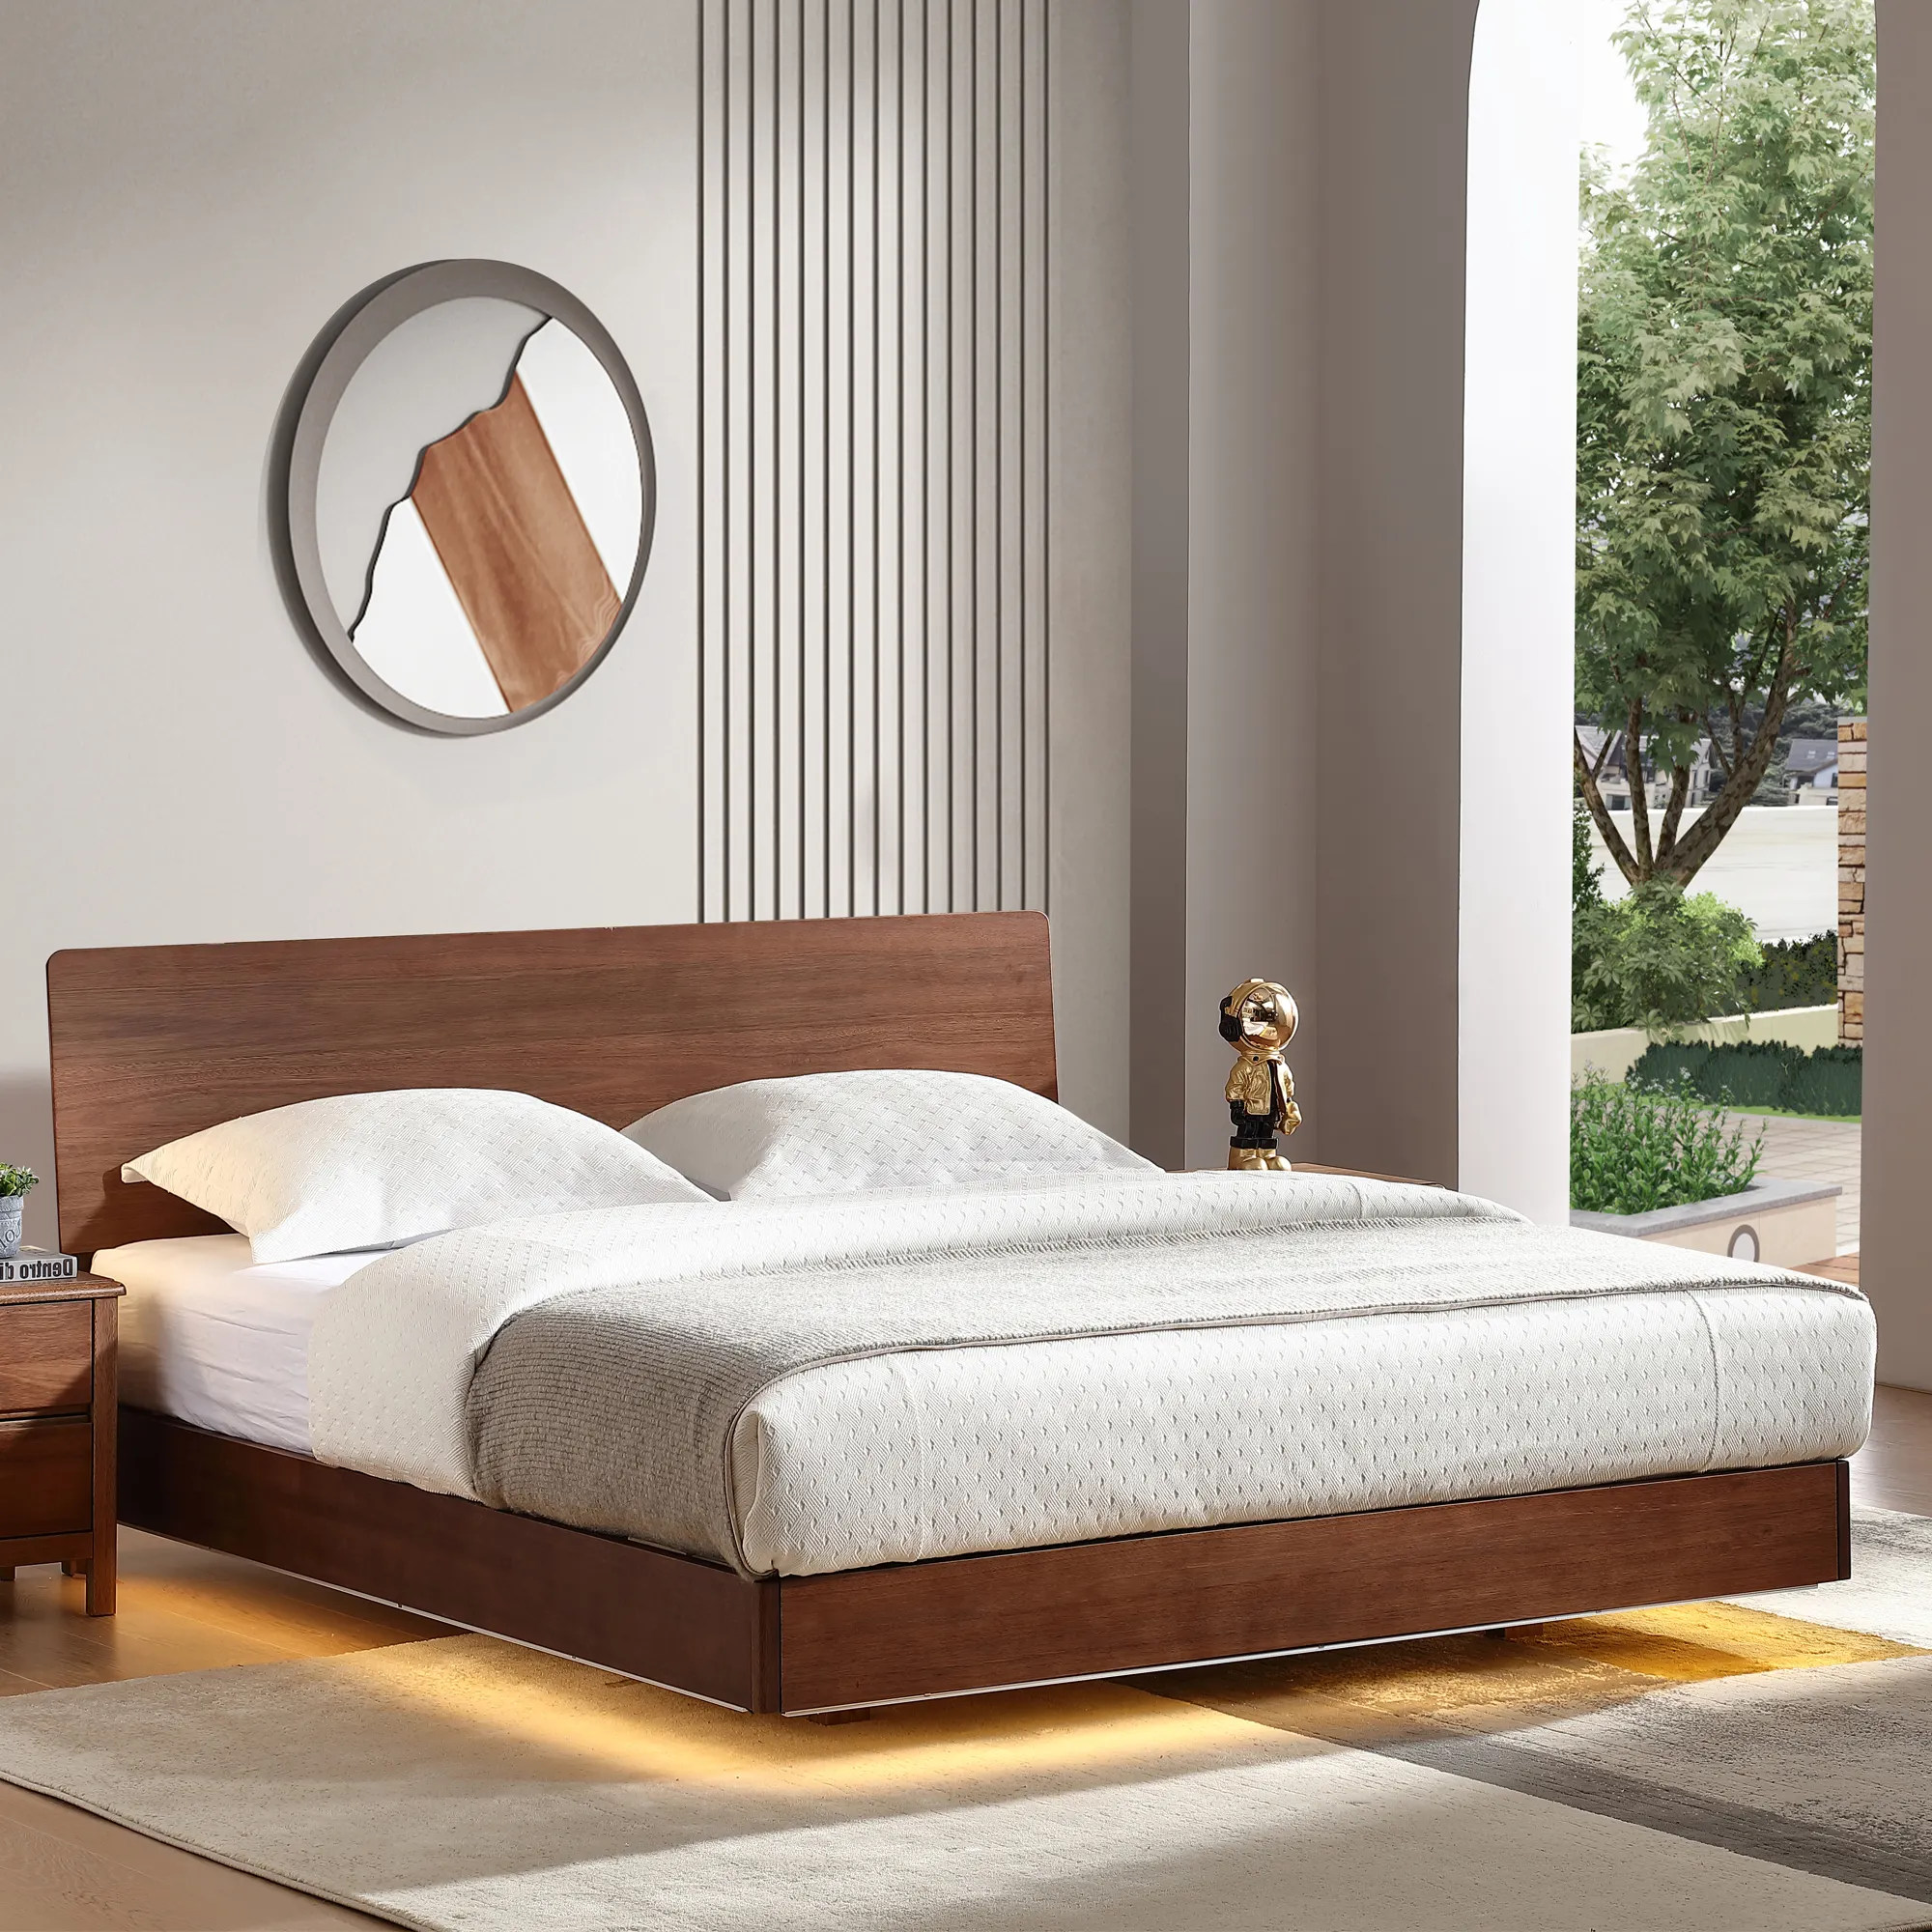 Đơn giản dễ dàng lắp ráp rắn Rosewood nổi thiết kế khung giường bằng gỗ đầu giường giường nệm nền tảng cho khách sạn dự án